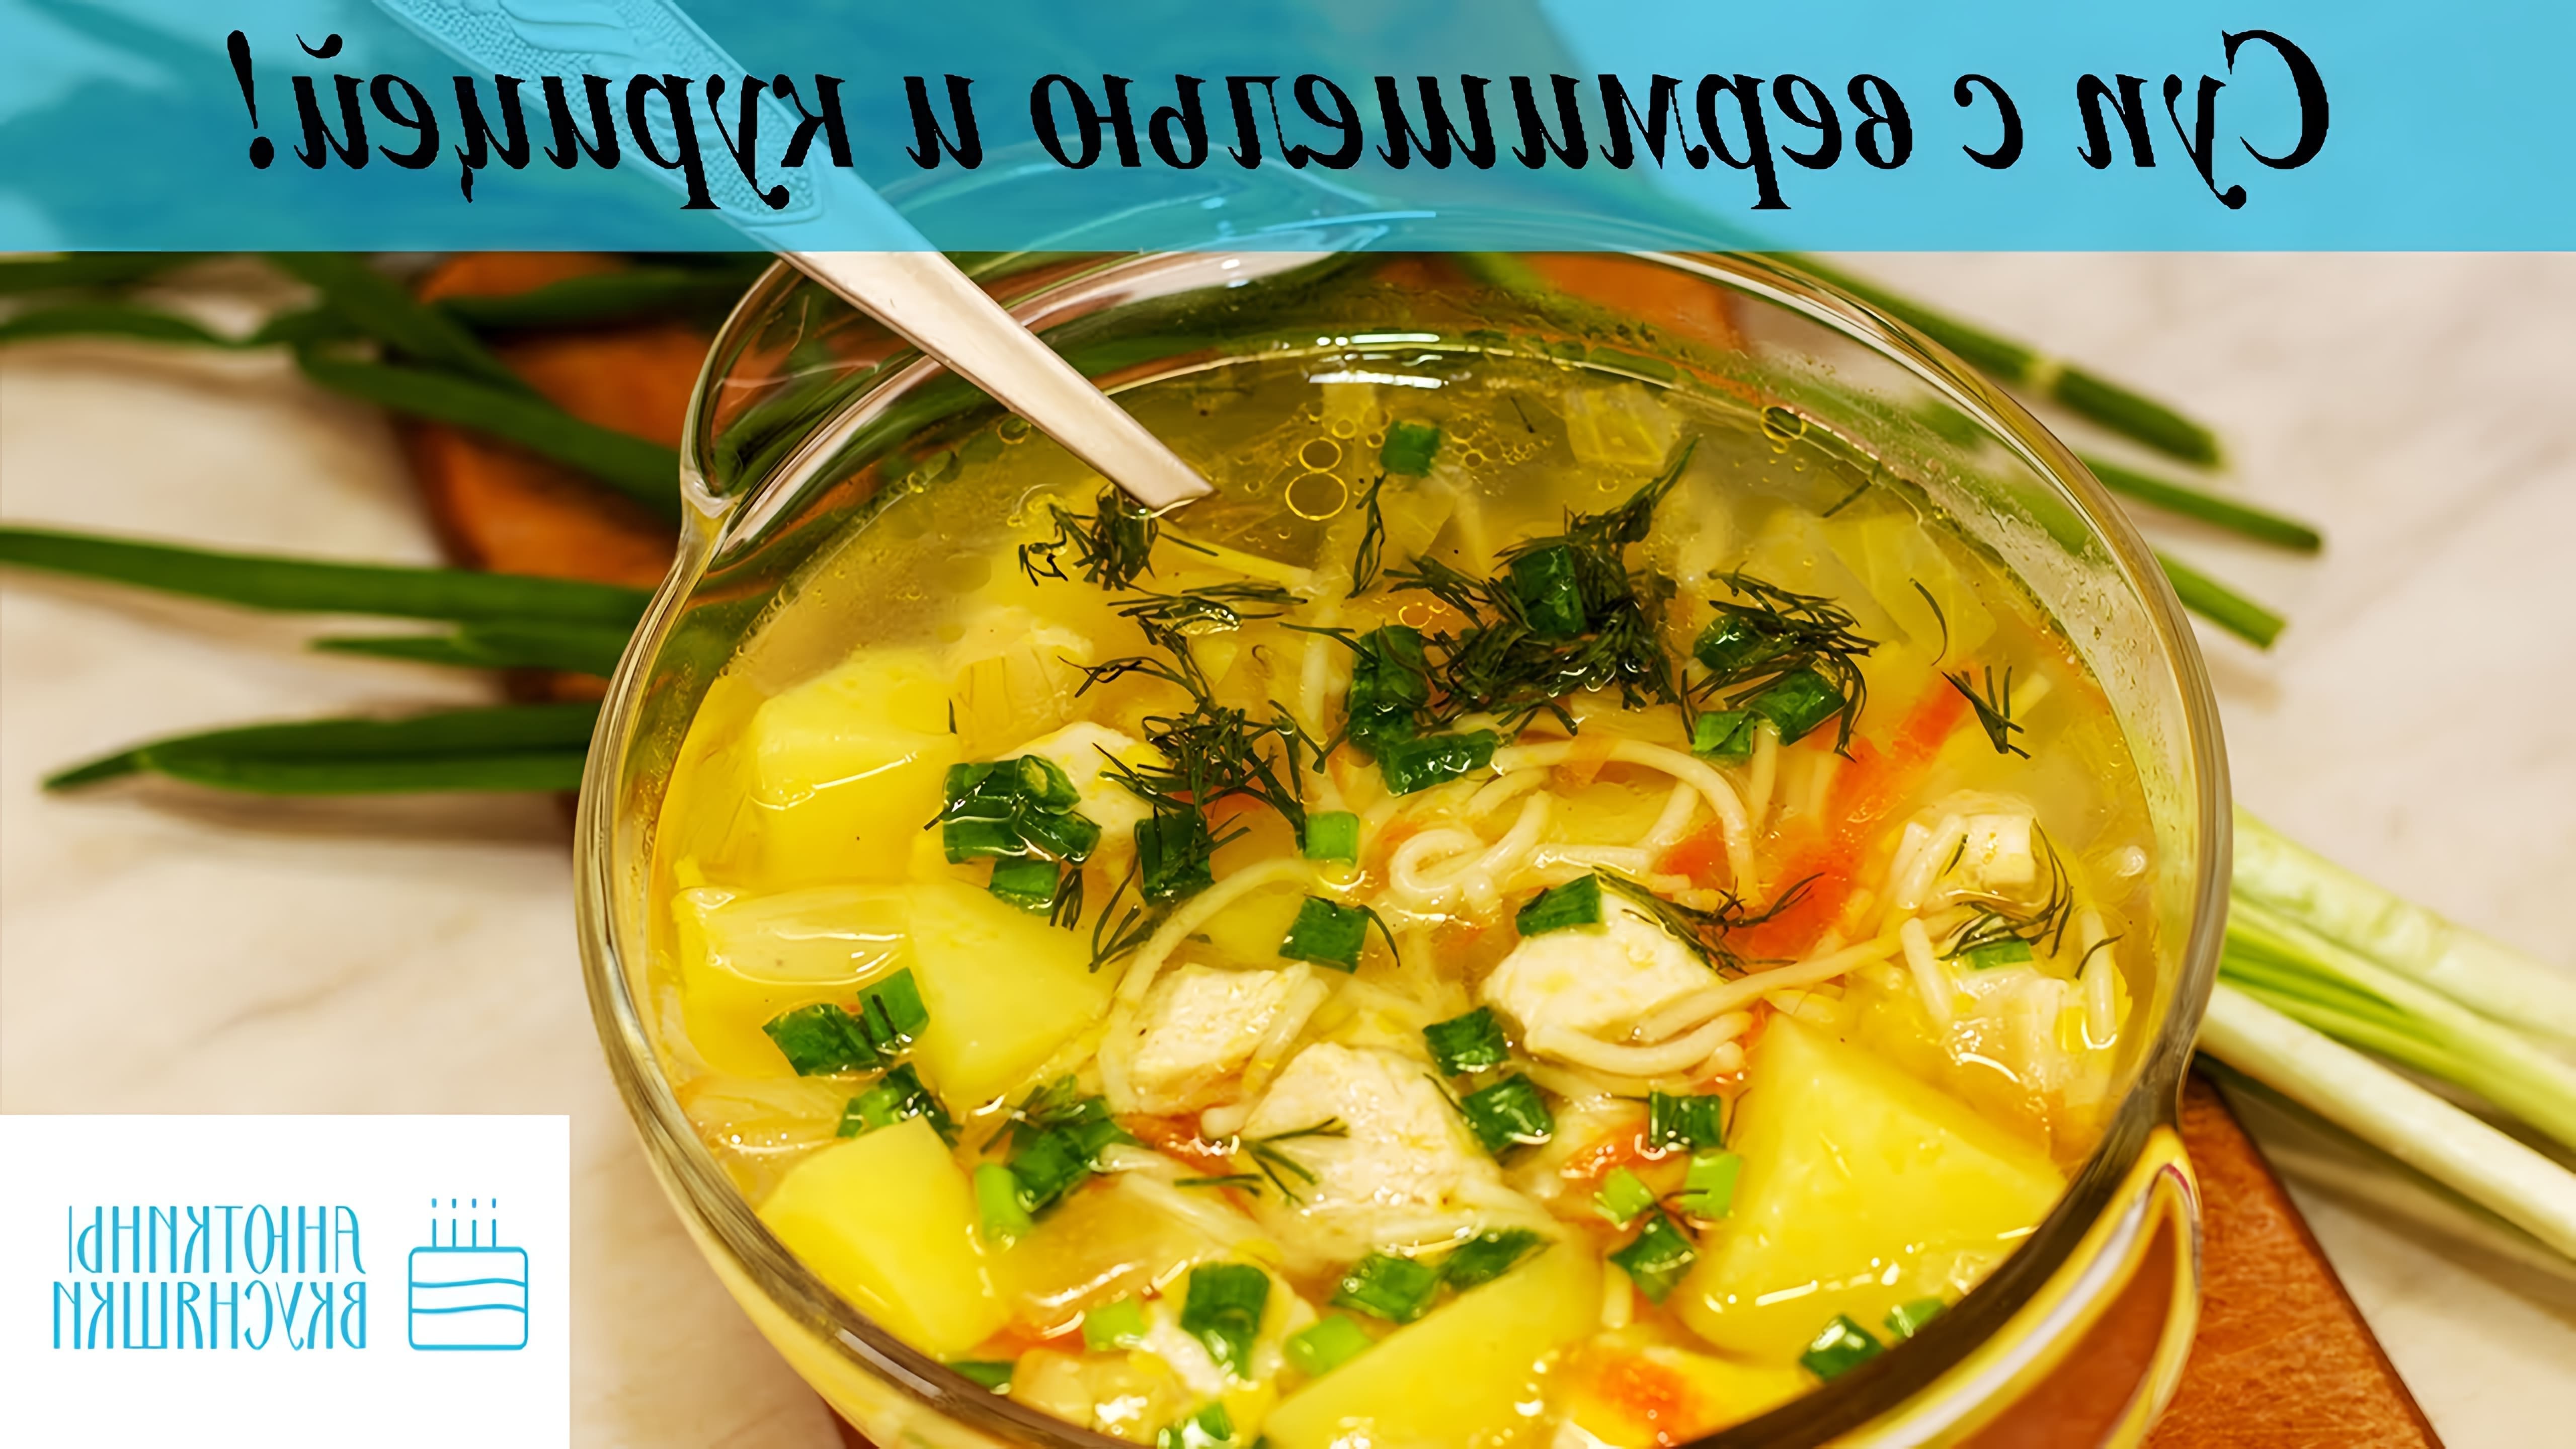 В этом видео демонстрируется процесс приготовления супа с вермишелью и курицей